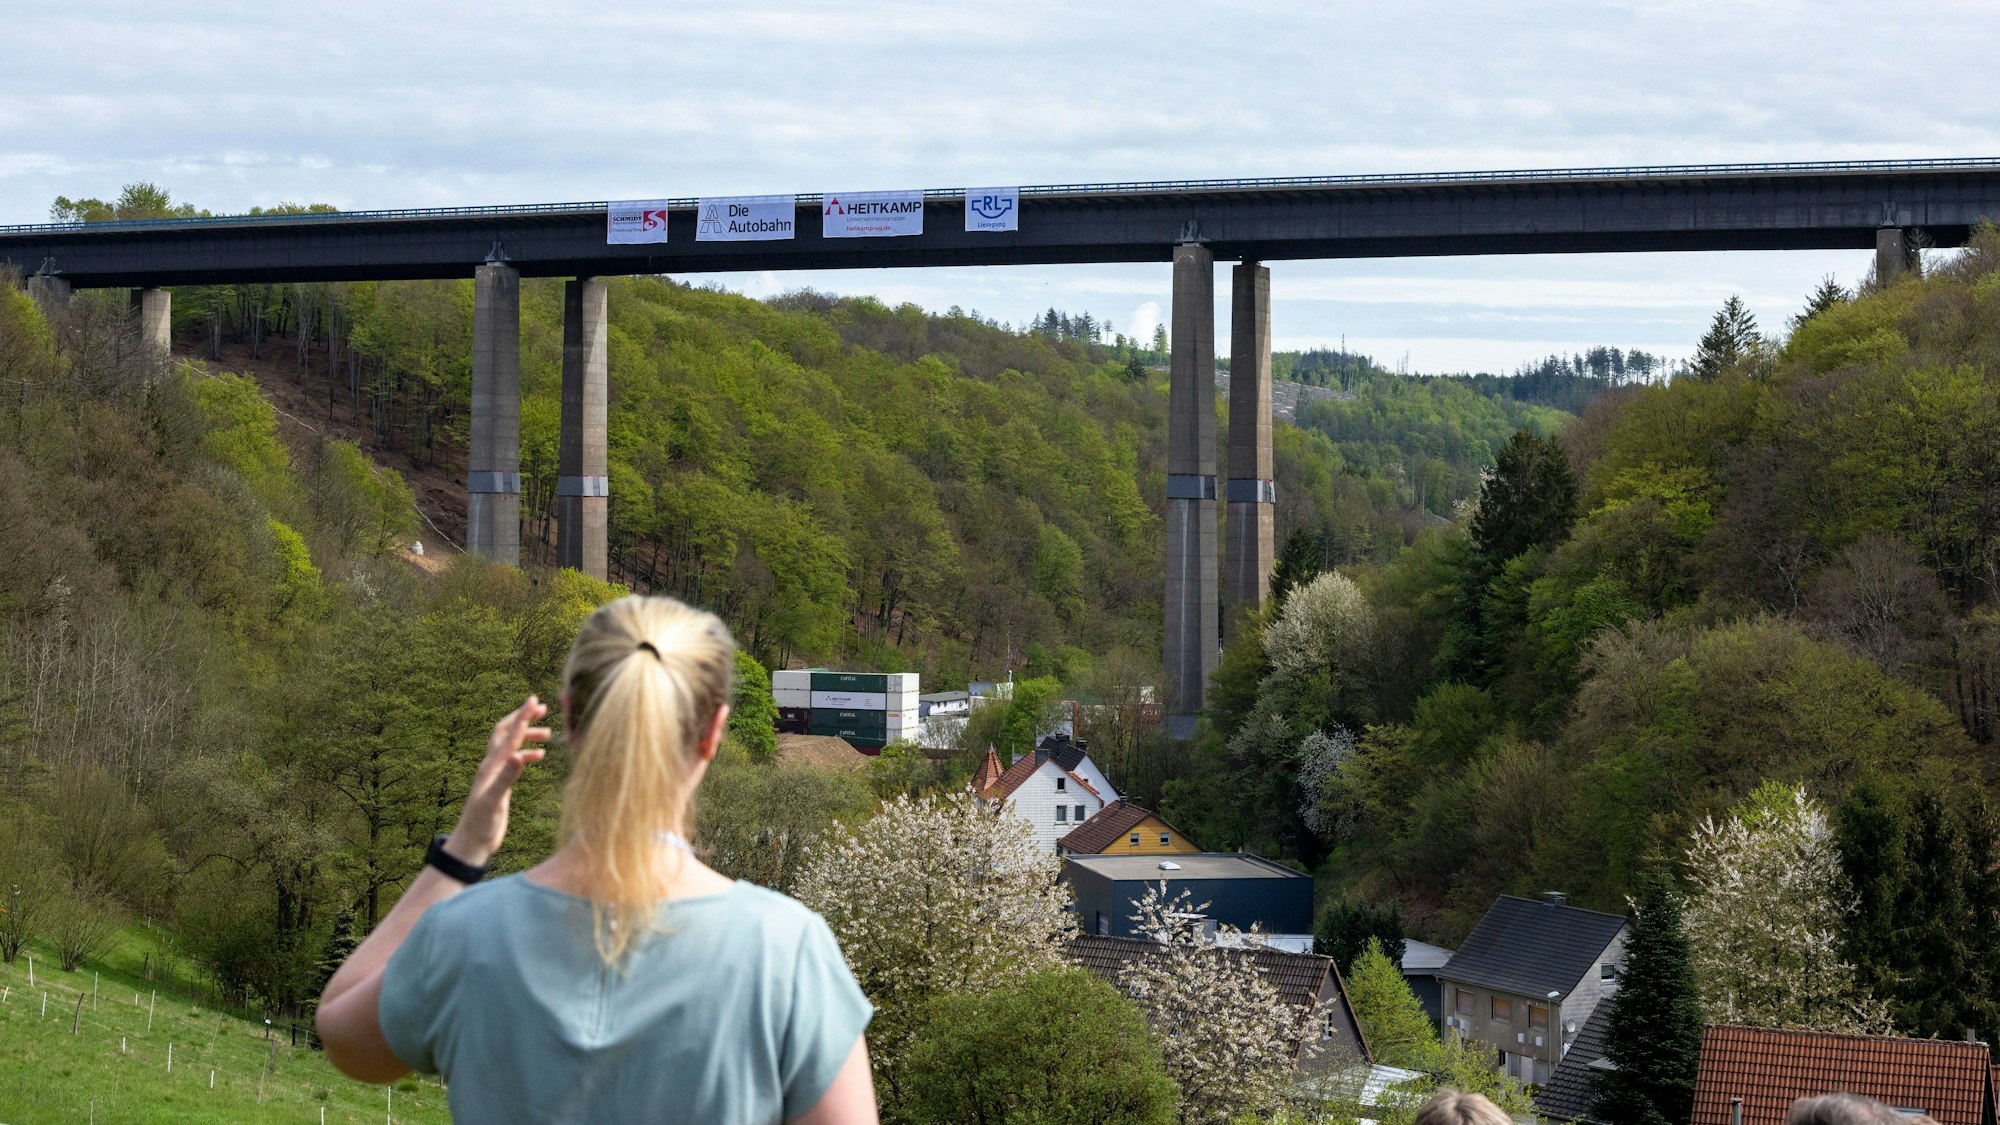 Sprengung der A45-Talbrücke Rahmede: Eine Frau schaut auf die noch intakte Rahmede-Brücke am Sonntagvormittag.